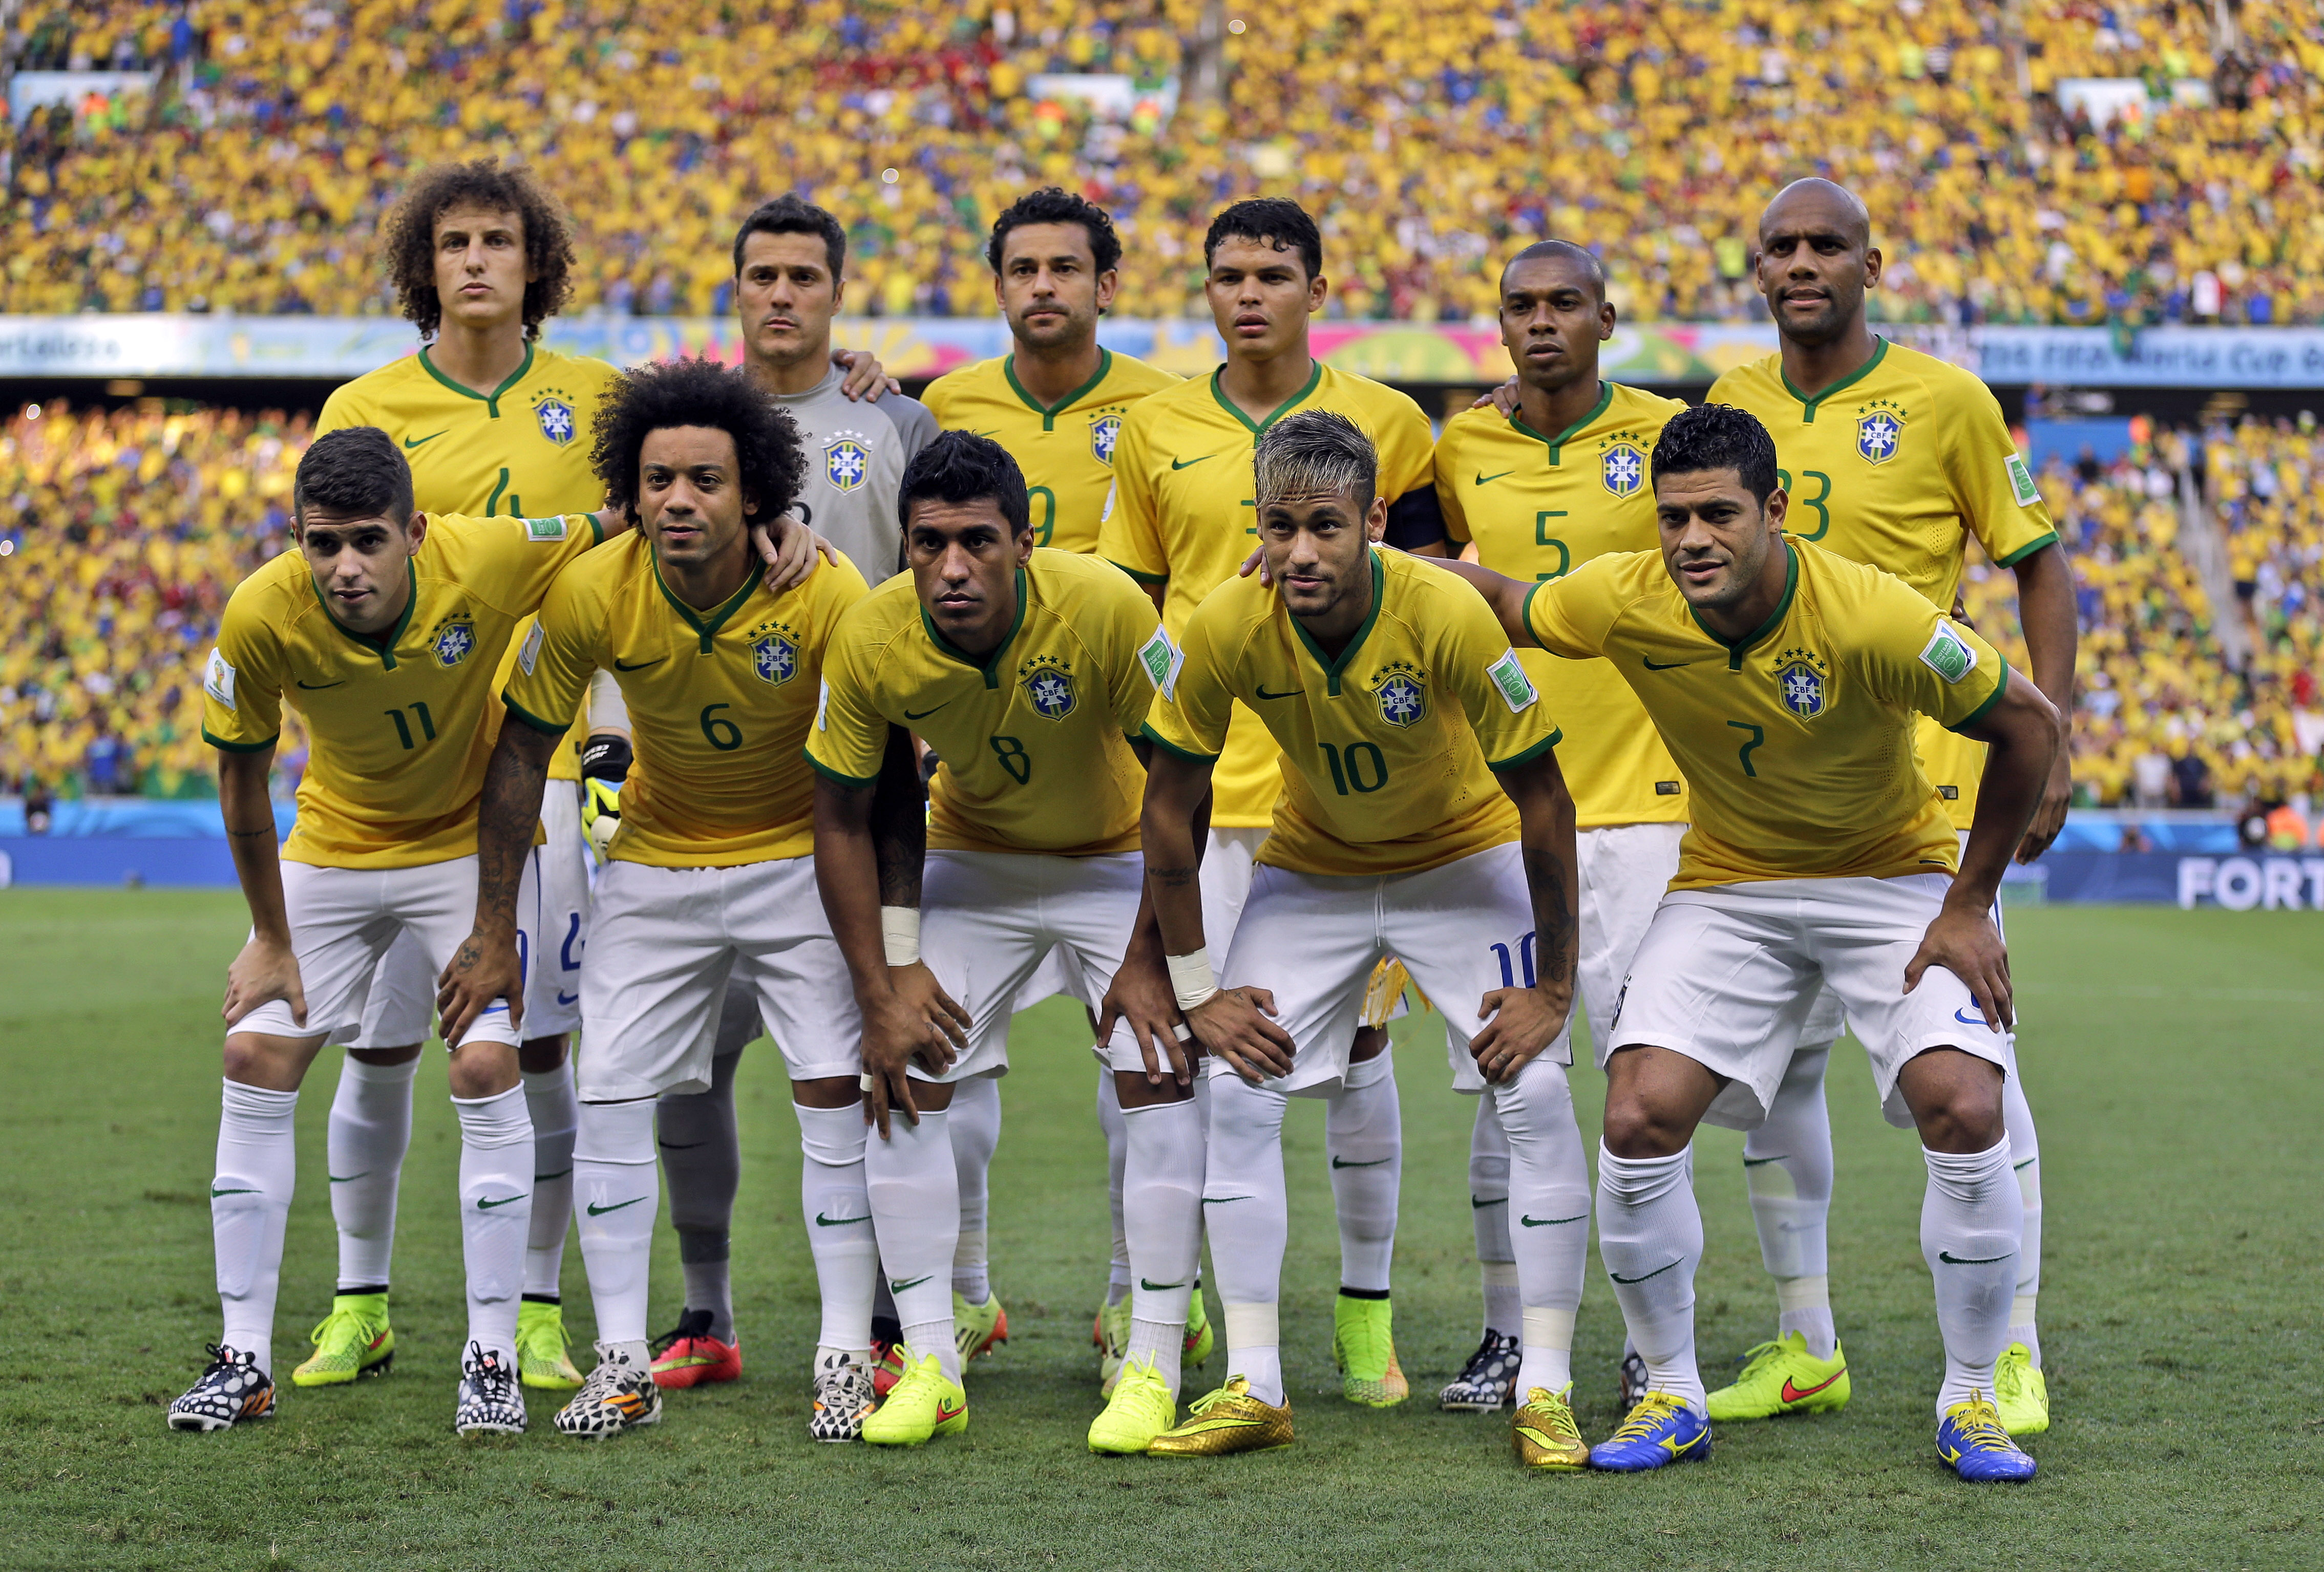 Μουντιάλ 2014: Βραζιλία – Κολομβία (2-1)